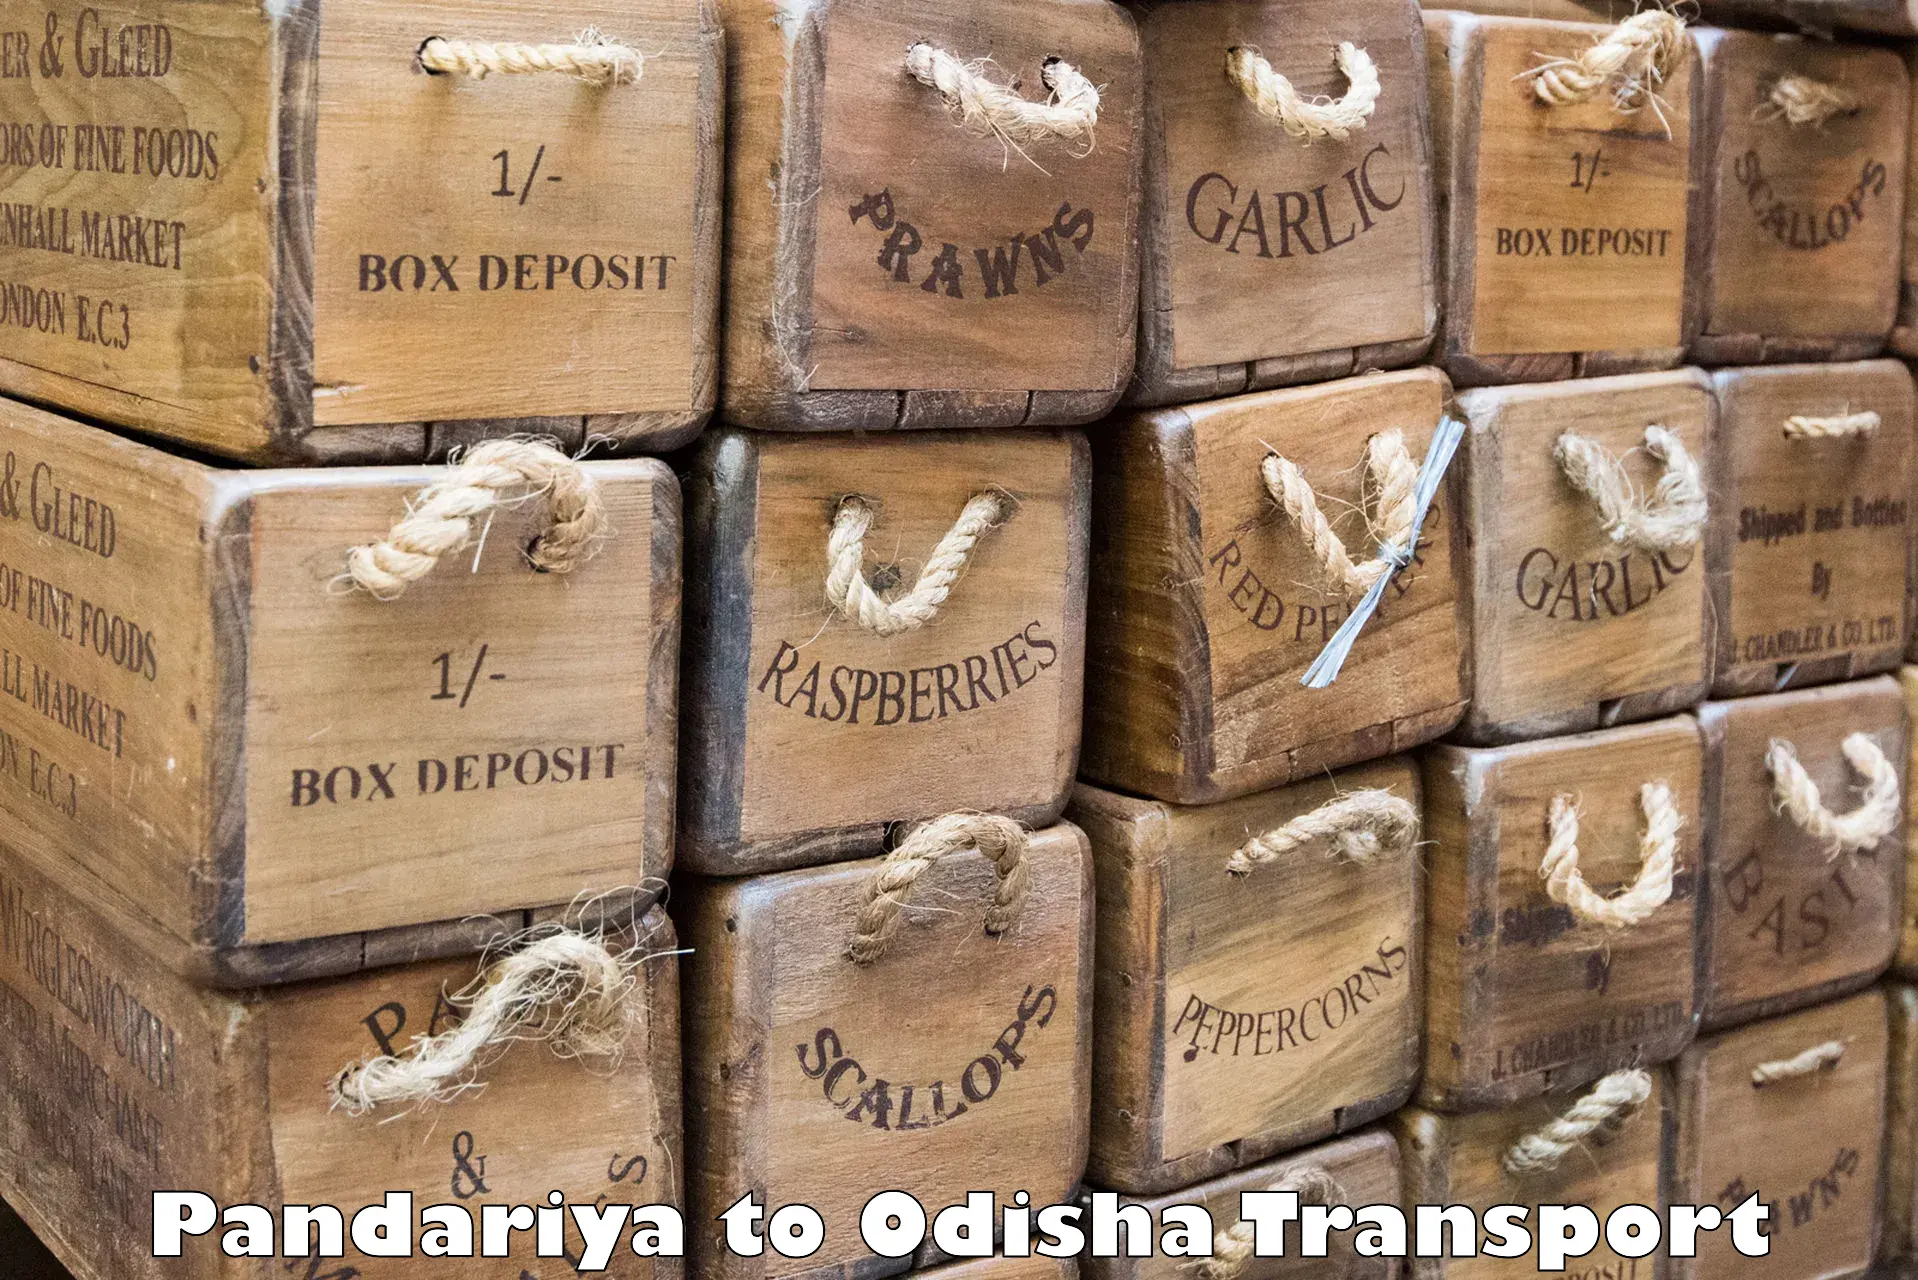 Air freight transport services Pandariya to Rourkela